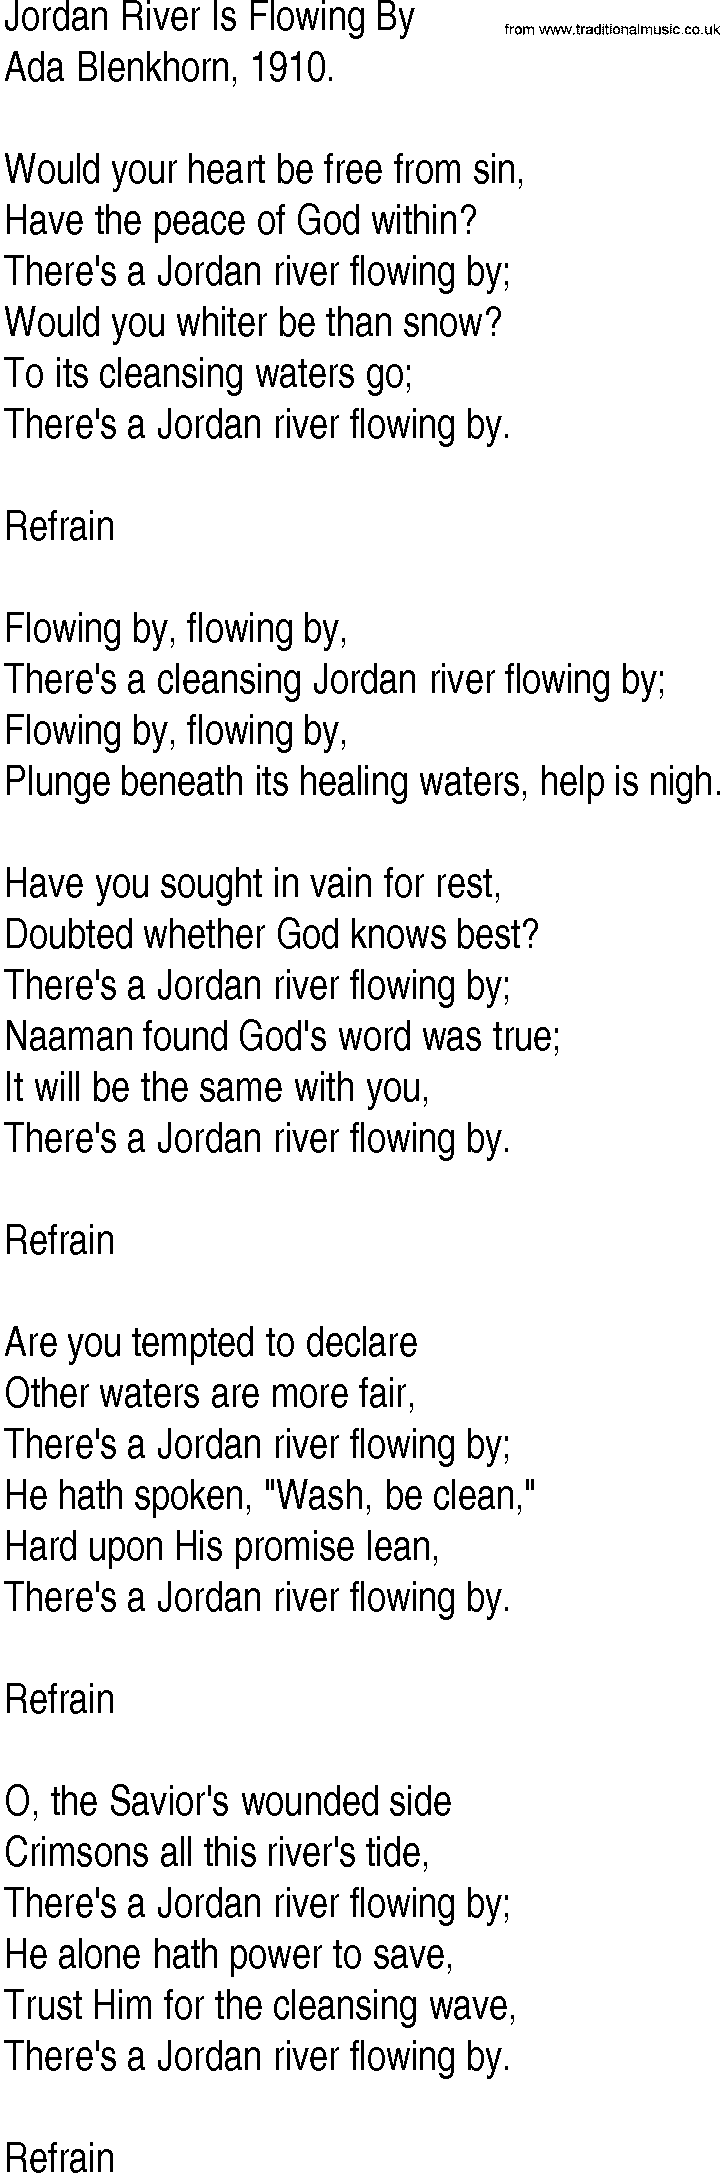 Hymn and Gospel Song Lyrics Jordan River Is Flowing By by Ada Blenkhorn